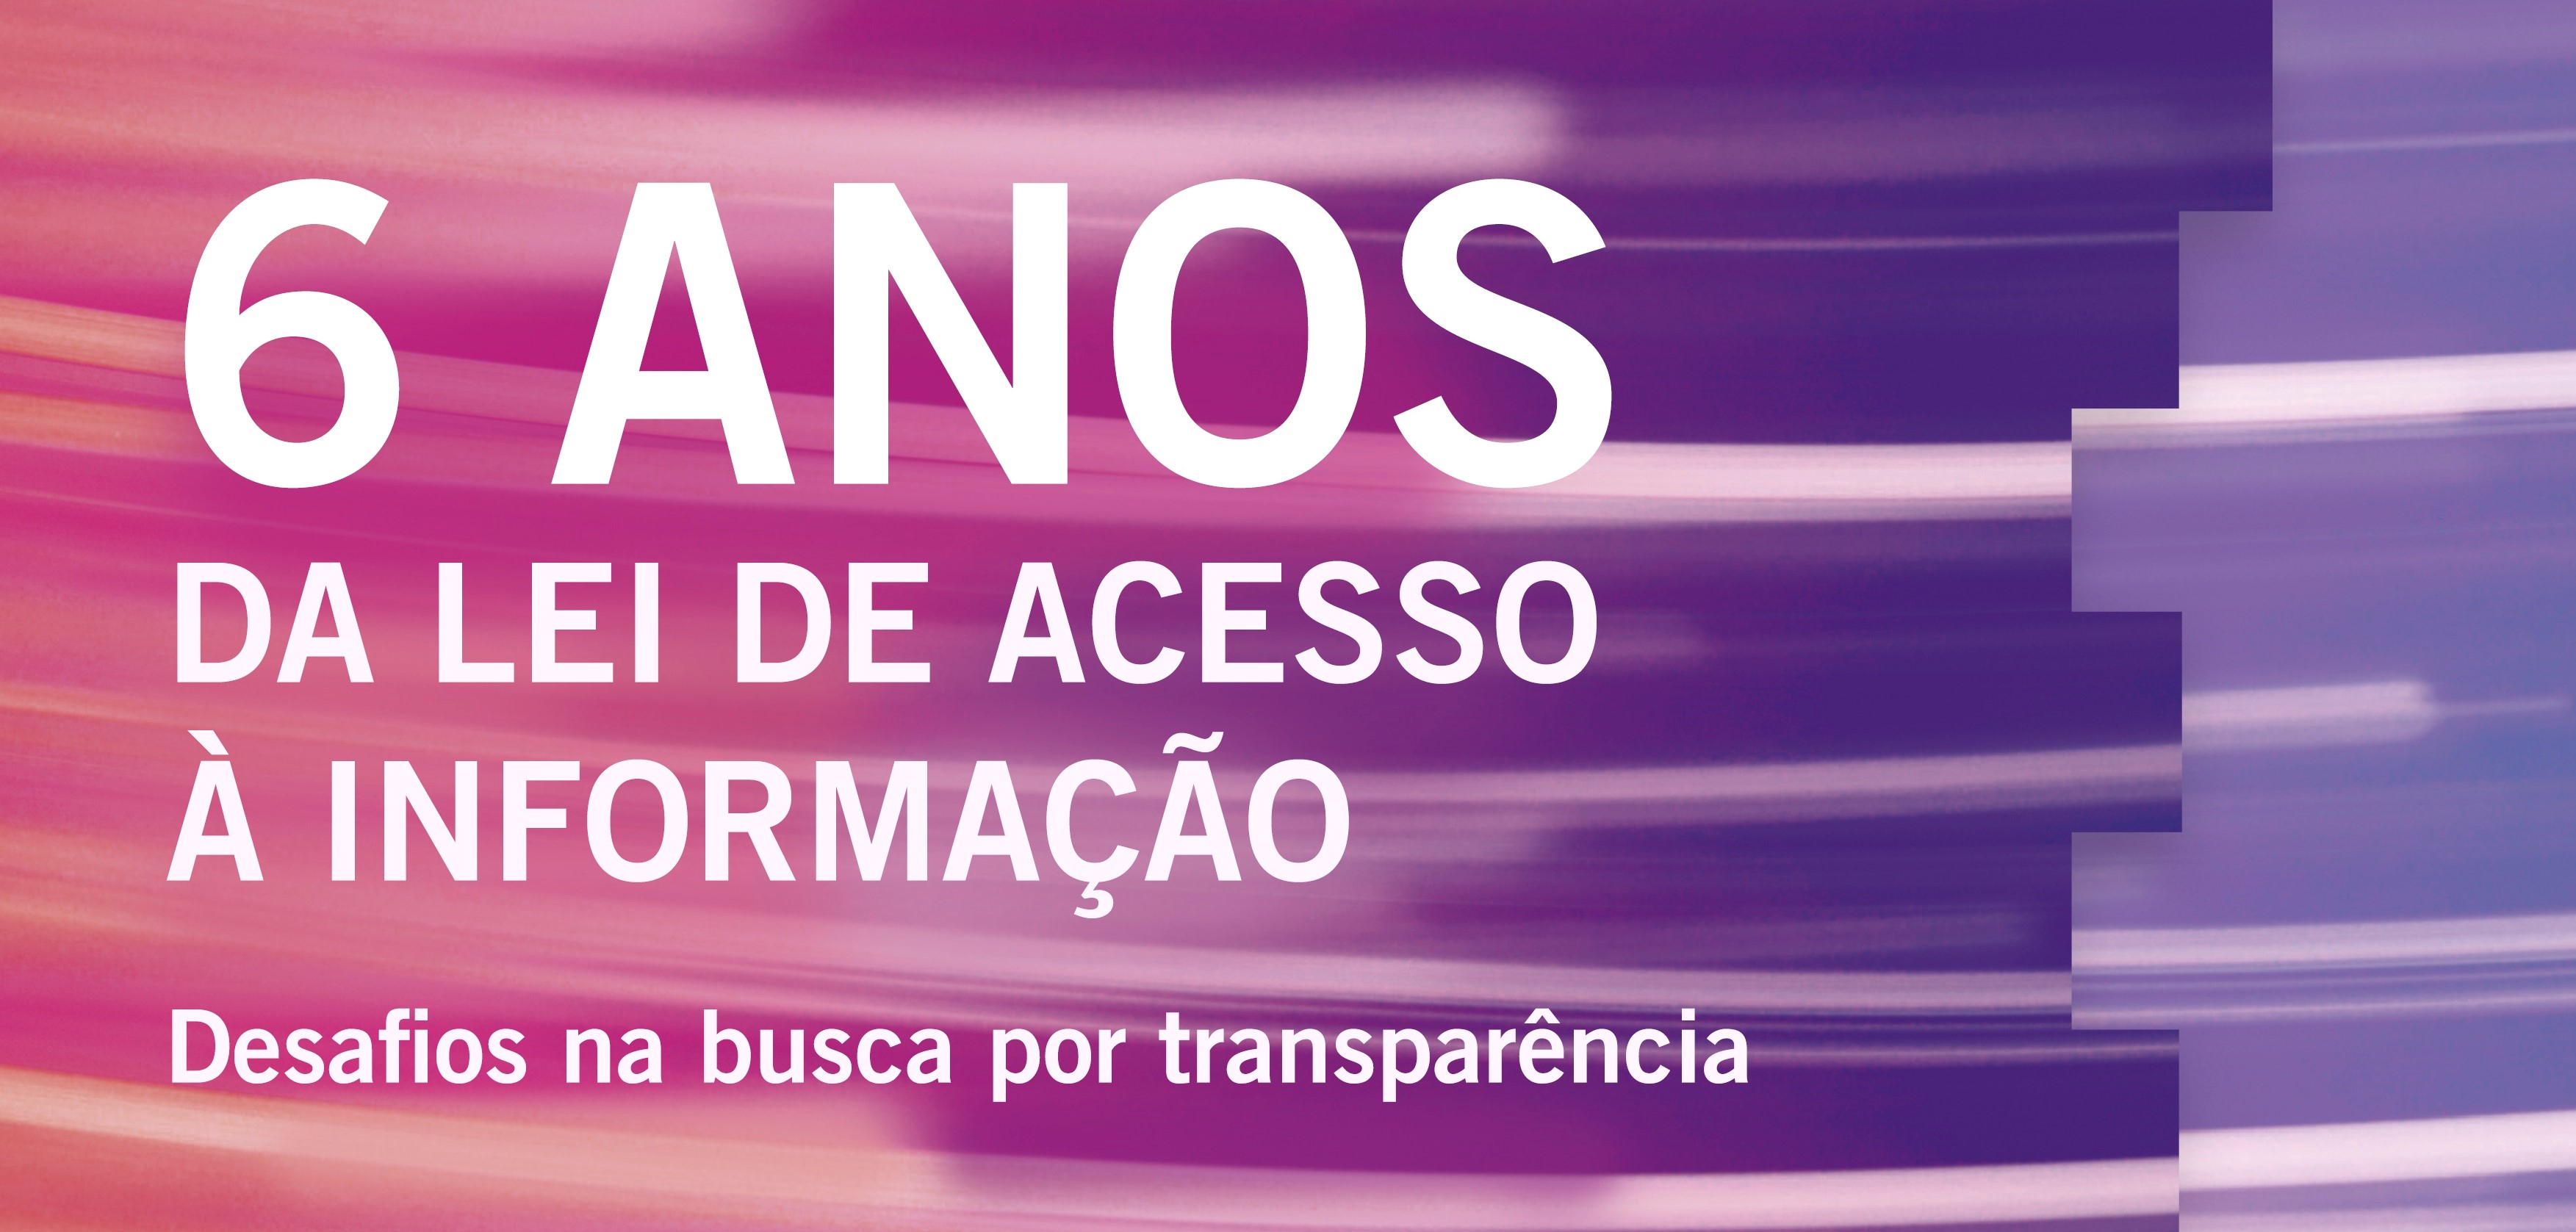 6º aniversário da Lei de Acesso a Informação é tema de debate em São Paulo